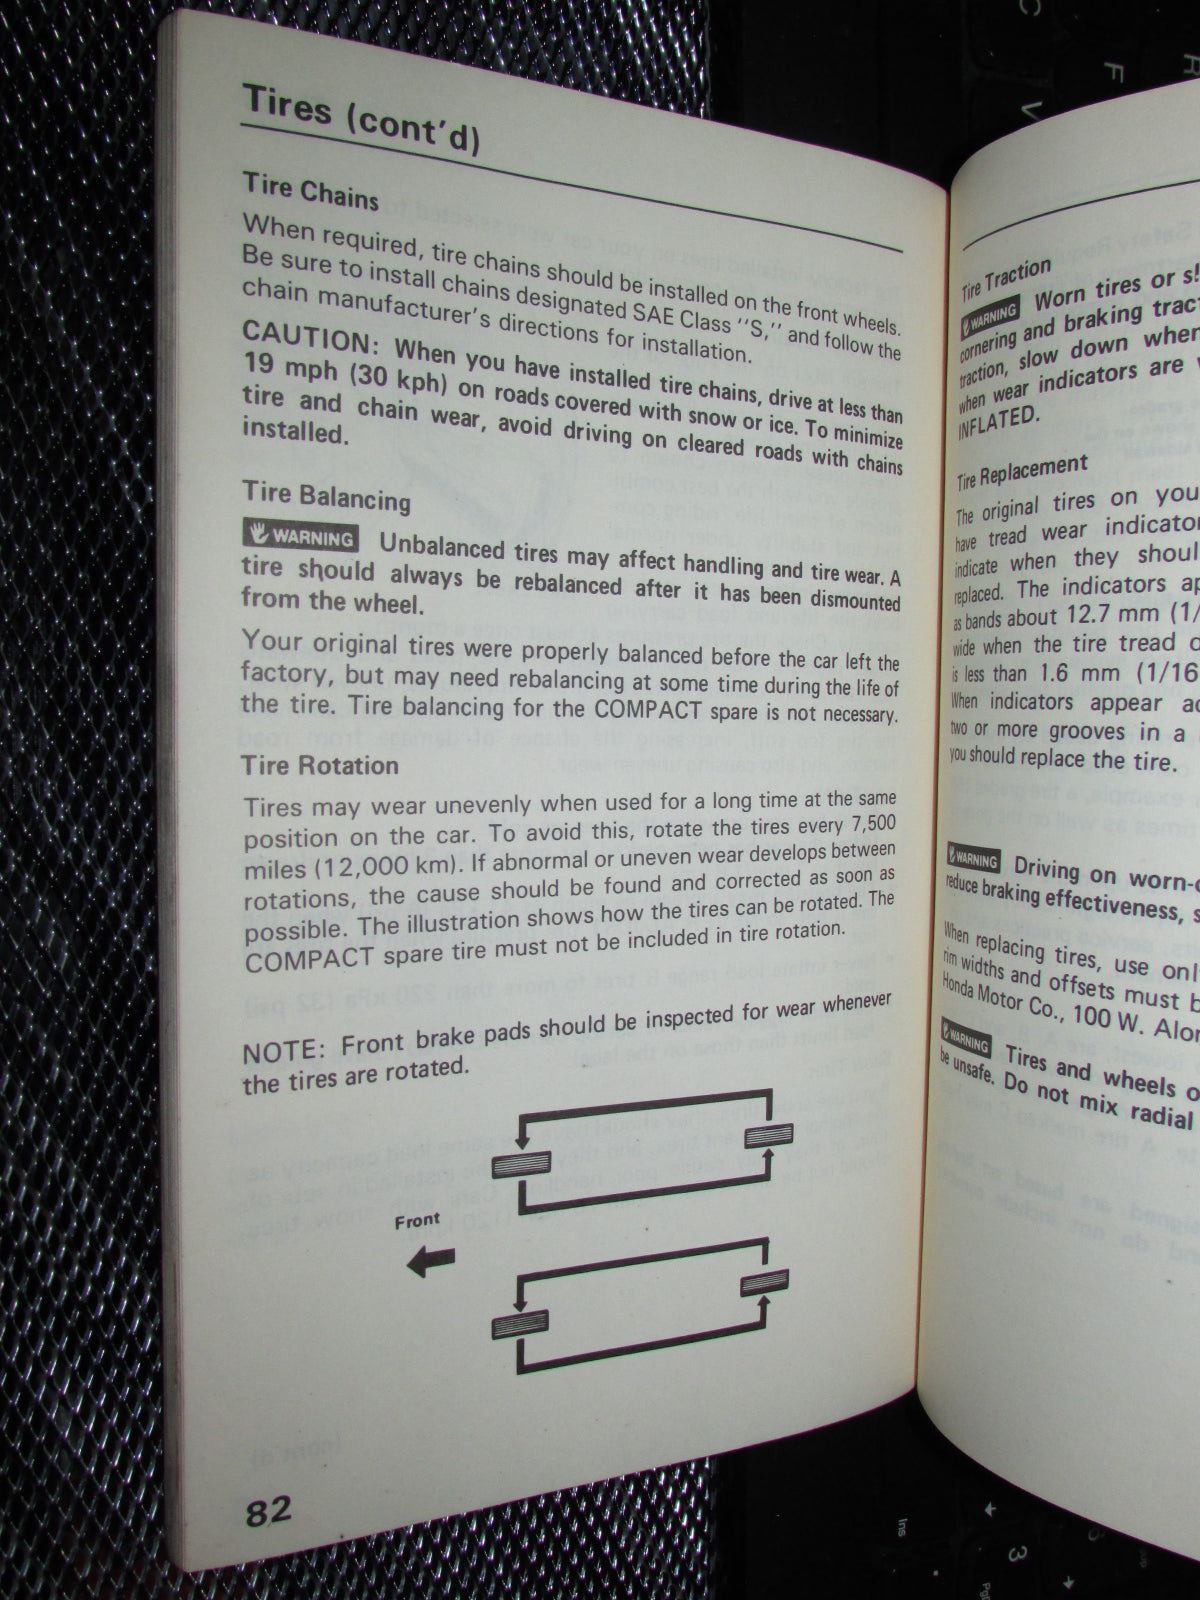 Honda Civic (1986) Owners Manual